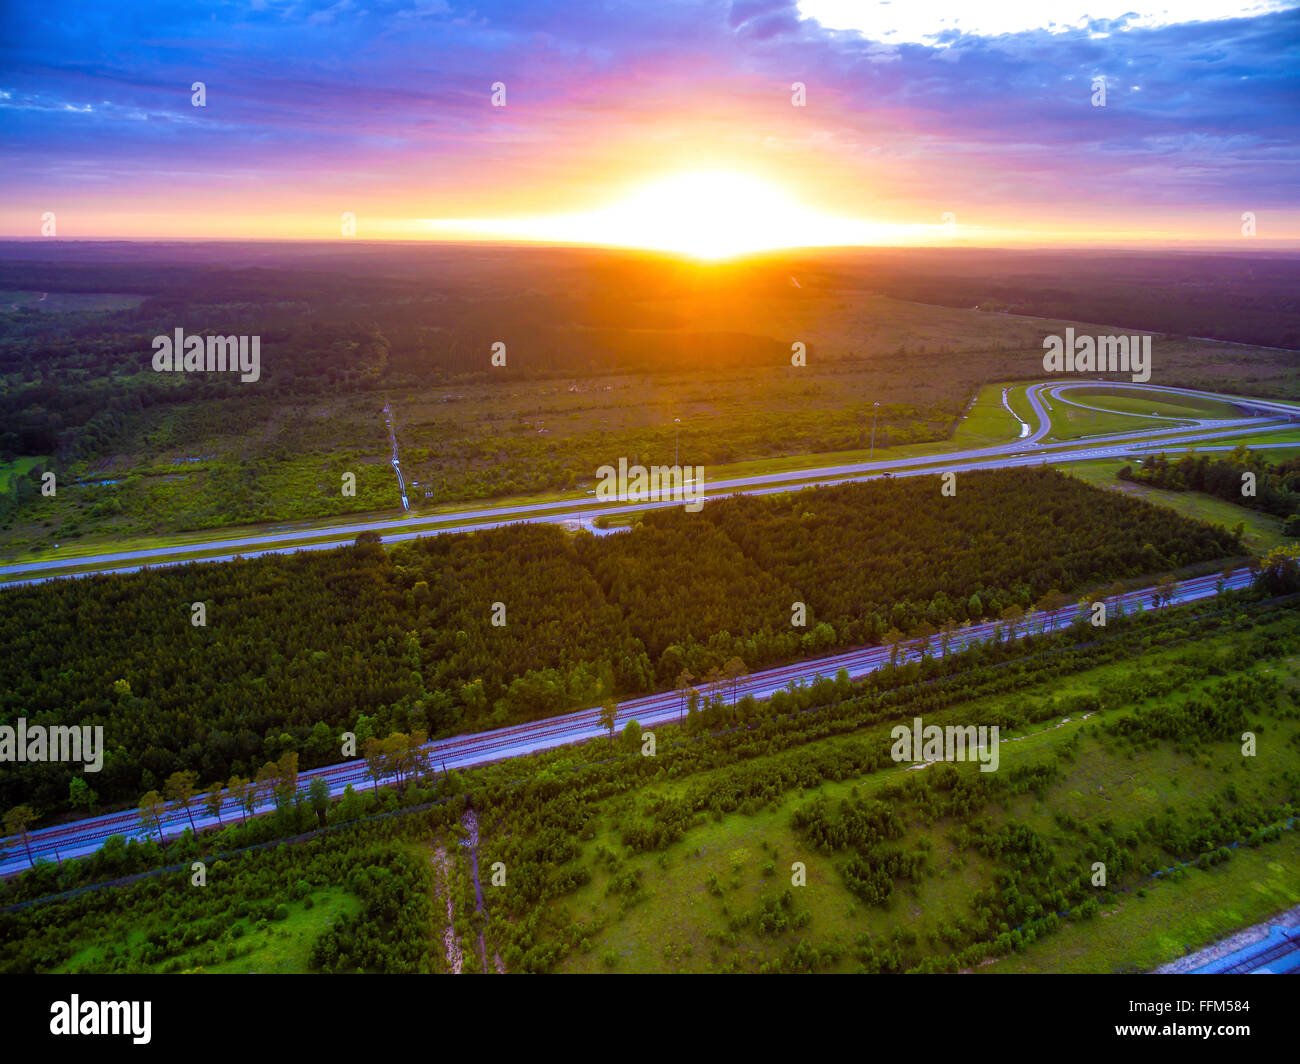 - Vue aérienne drone de soleil sur les arbres et les forêts de l'Alabama routes et voies ferrées avec ciel rempli de nuages Banque D'Images